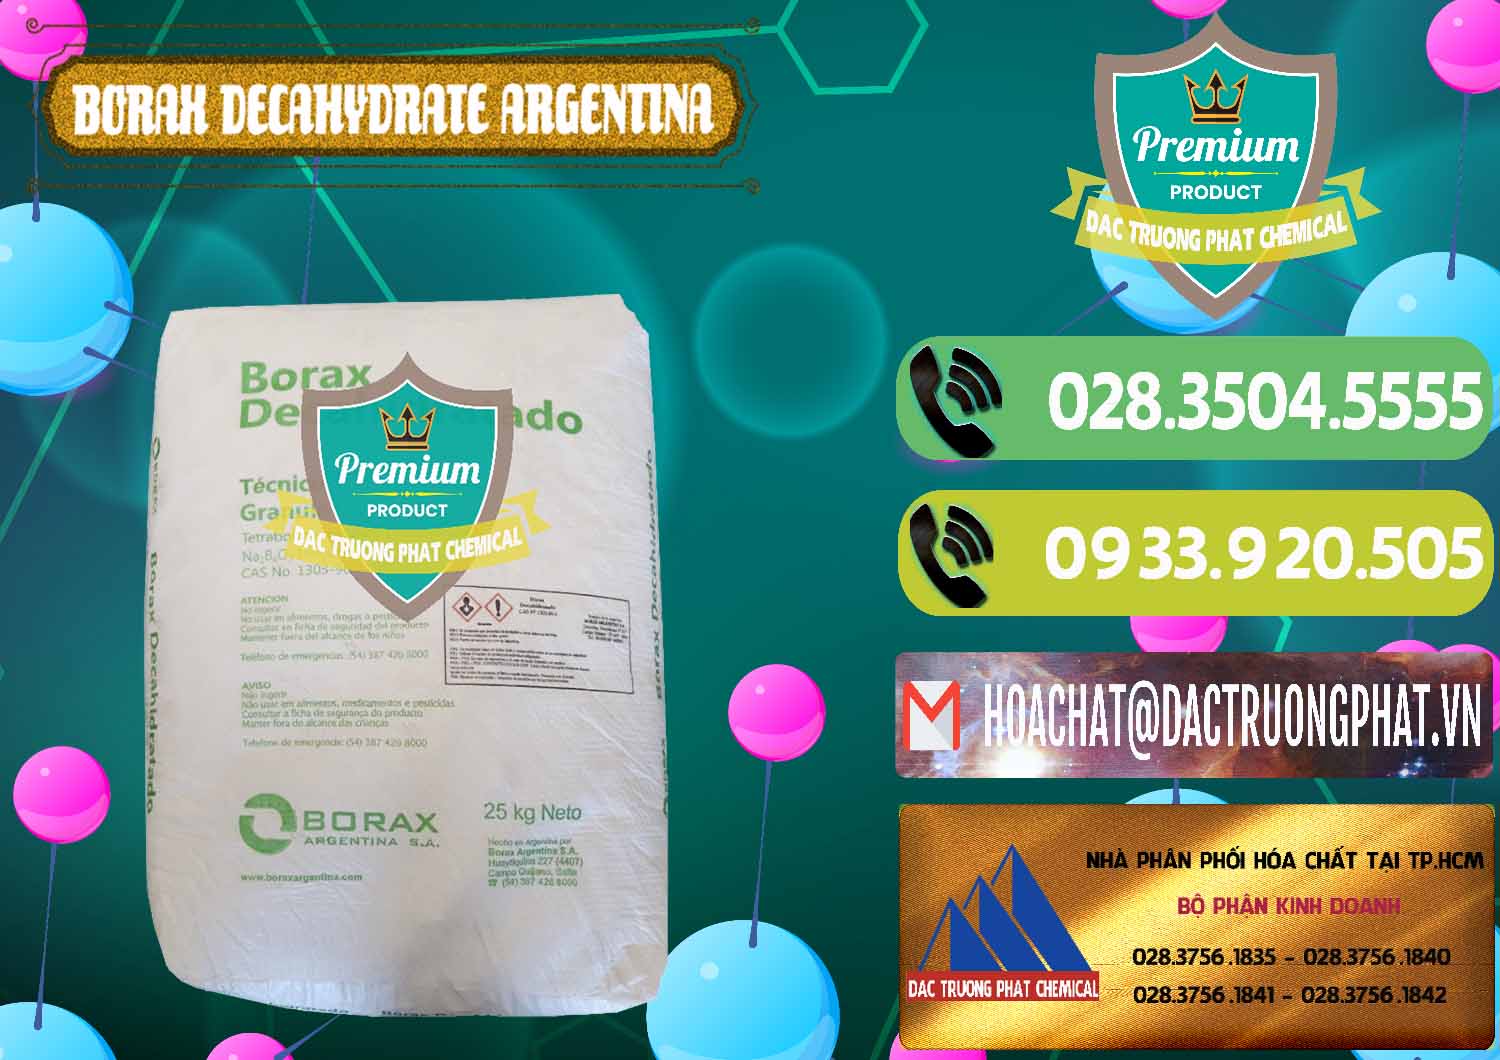 Bán Borax Decahydrate Argentina - 0446 - Cty cung cấp - phân phối hóa chất tại TP.HCM - hoachatmientay.vn